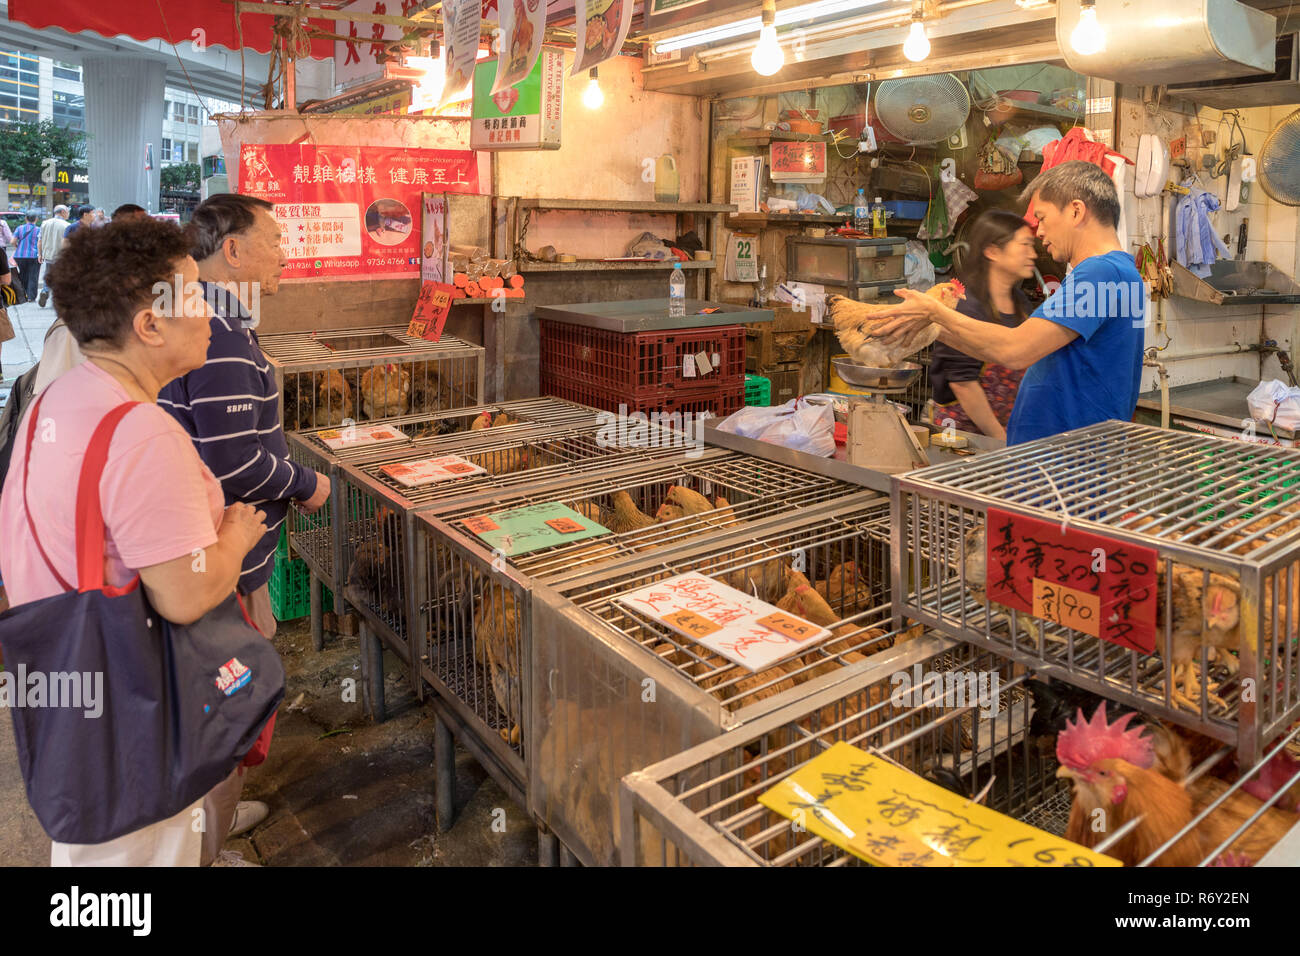 KOWLOON, HONG KONG - APRIL 22, 2017: Live Chickens at Poultry Shop at Local Market in Kowloon, Hong Kong. Stock Photo